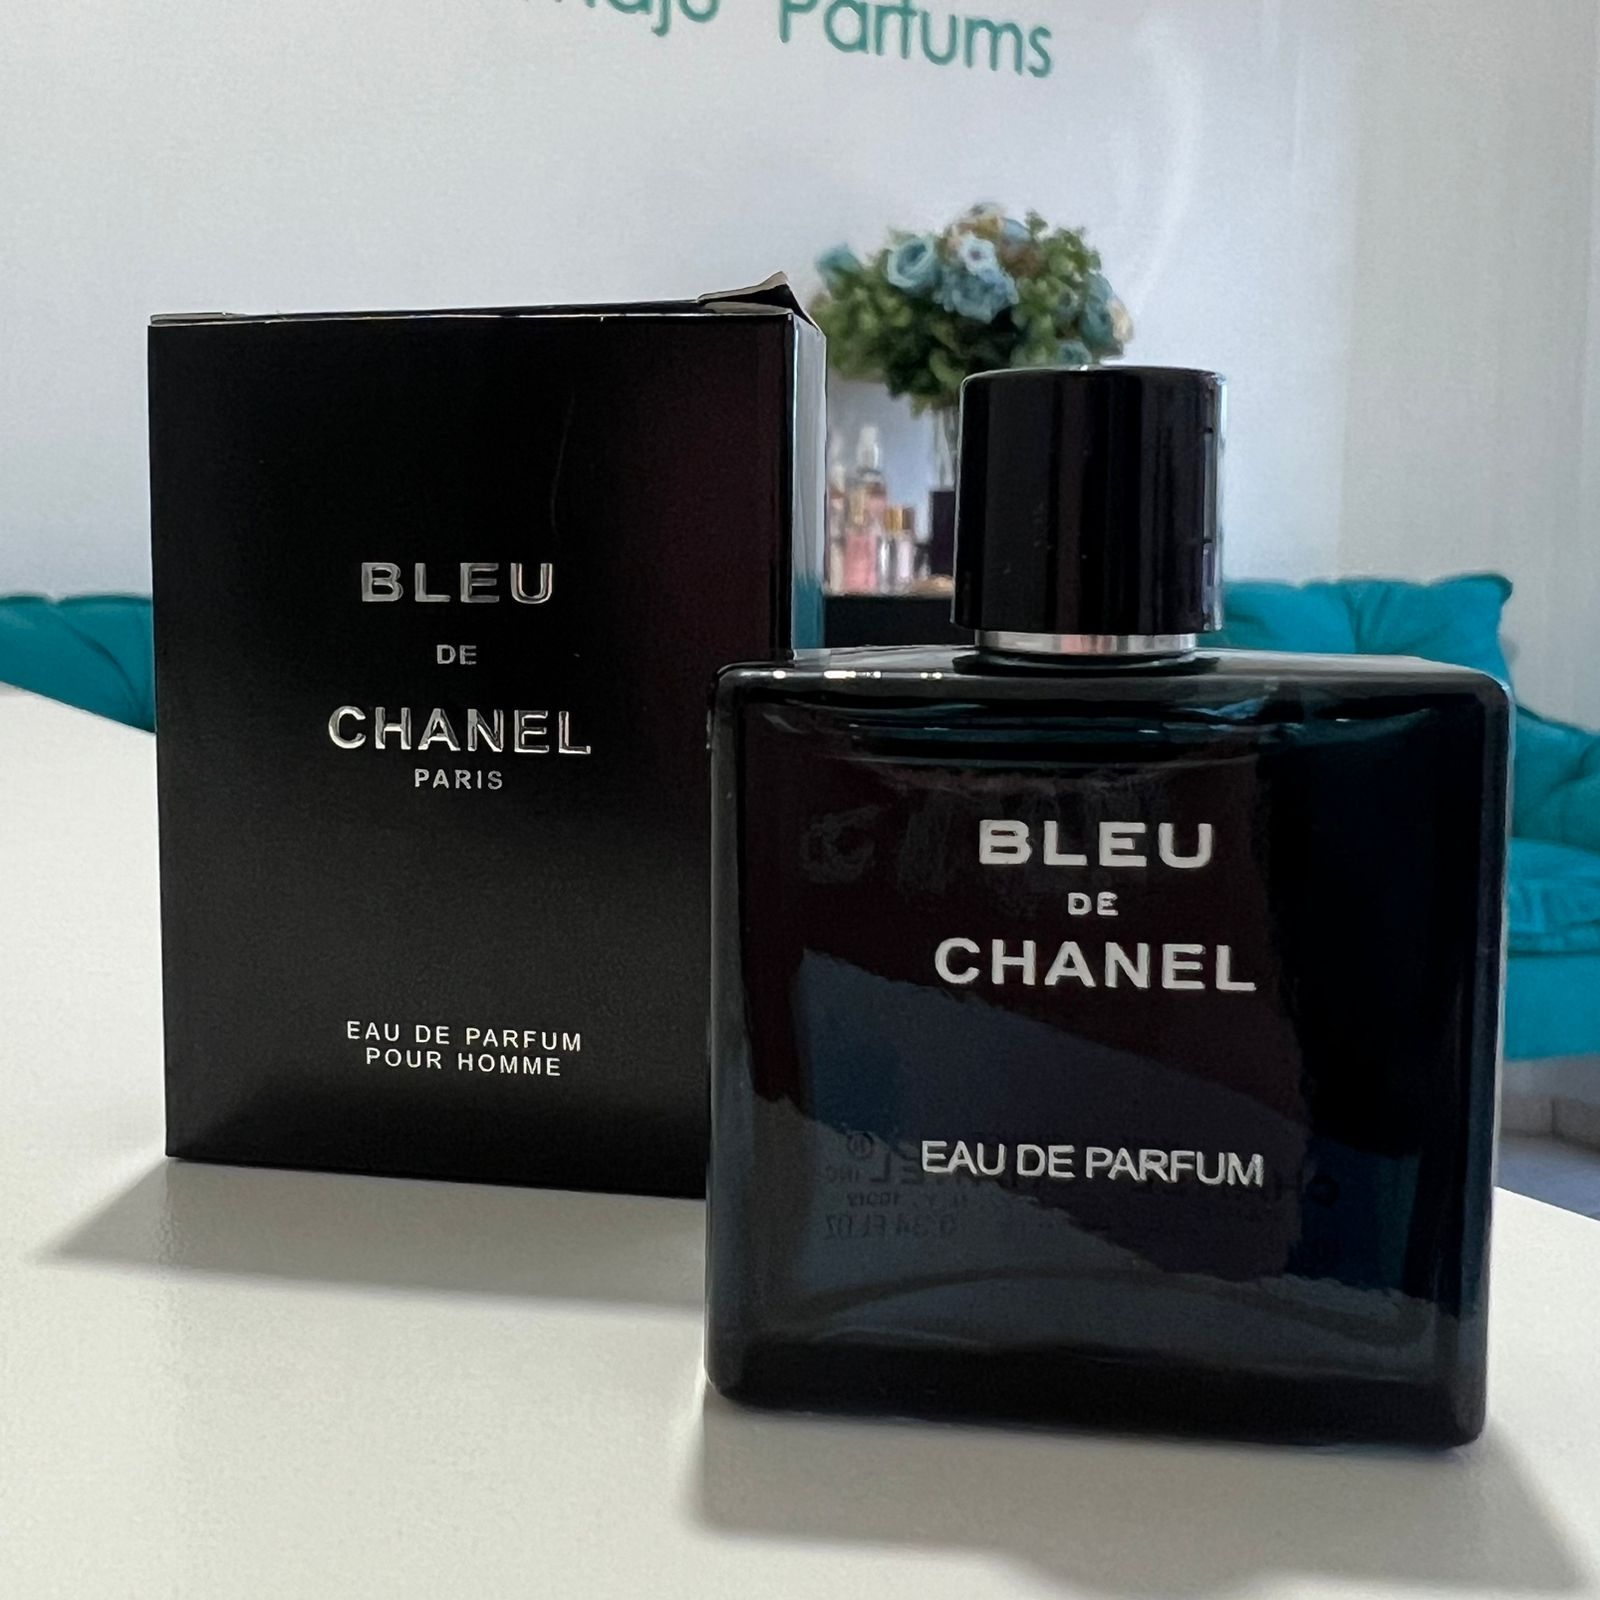 Bleu de Chanel 10 ml eau de Parfum - Miniatura Original